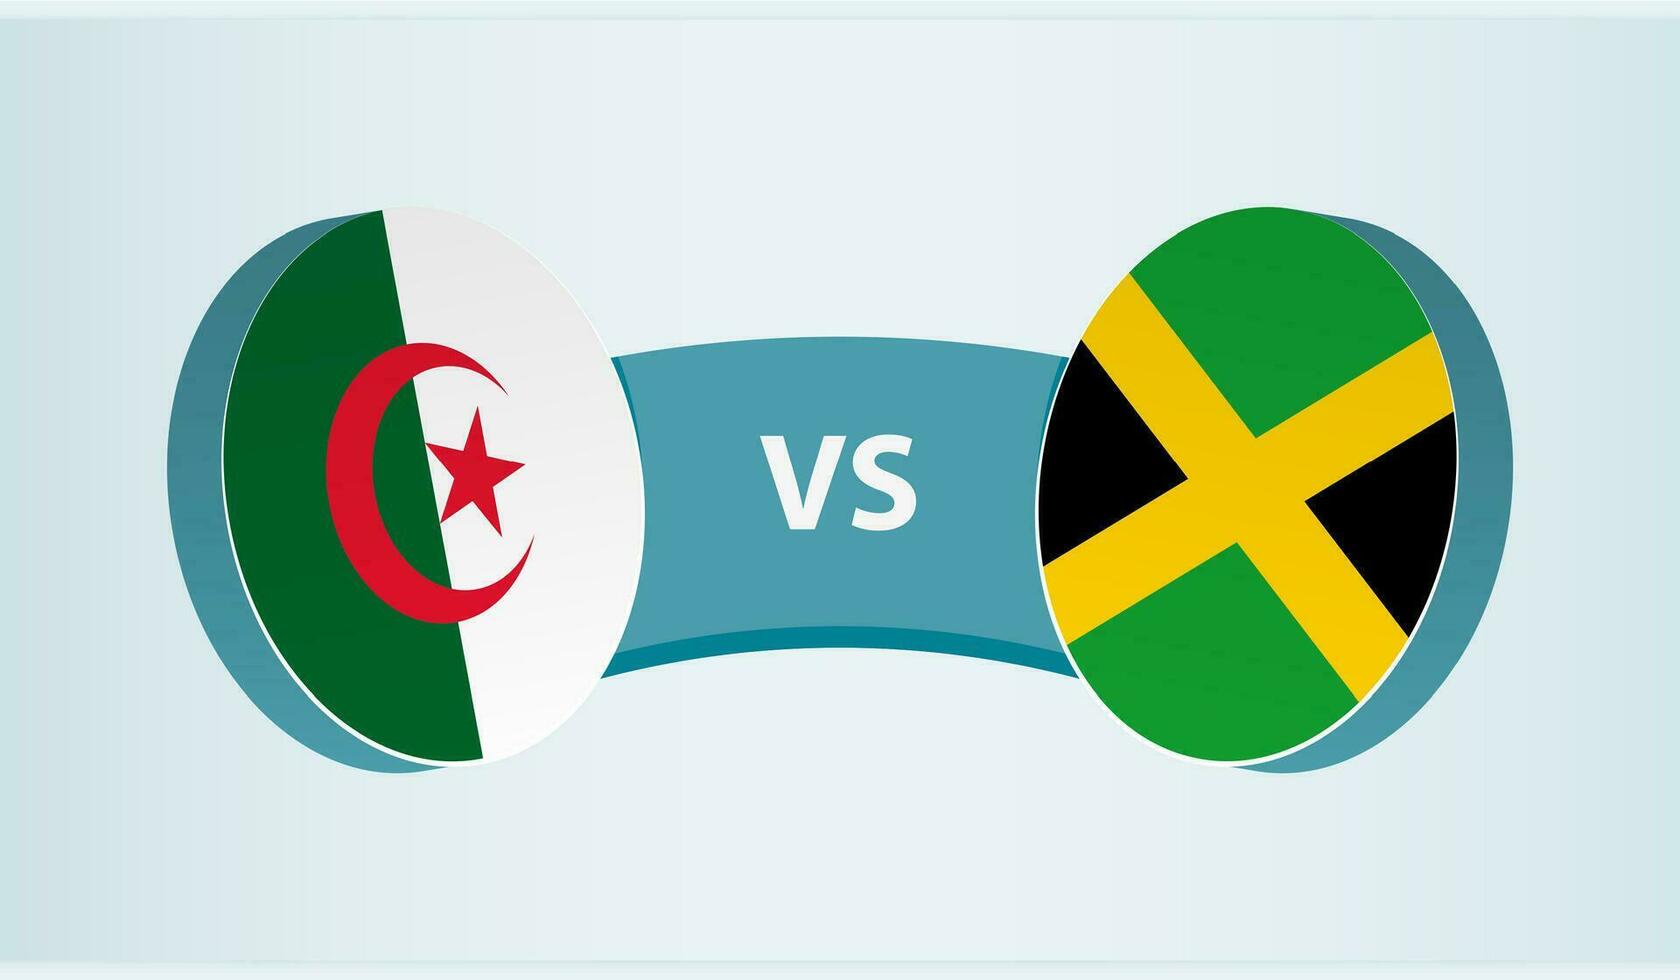 Algeria versus Jamaica, team sports competition concept. vector